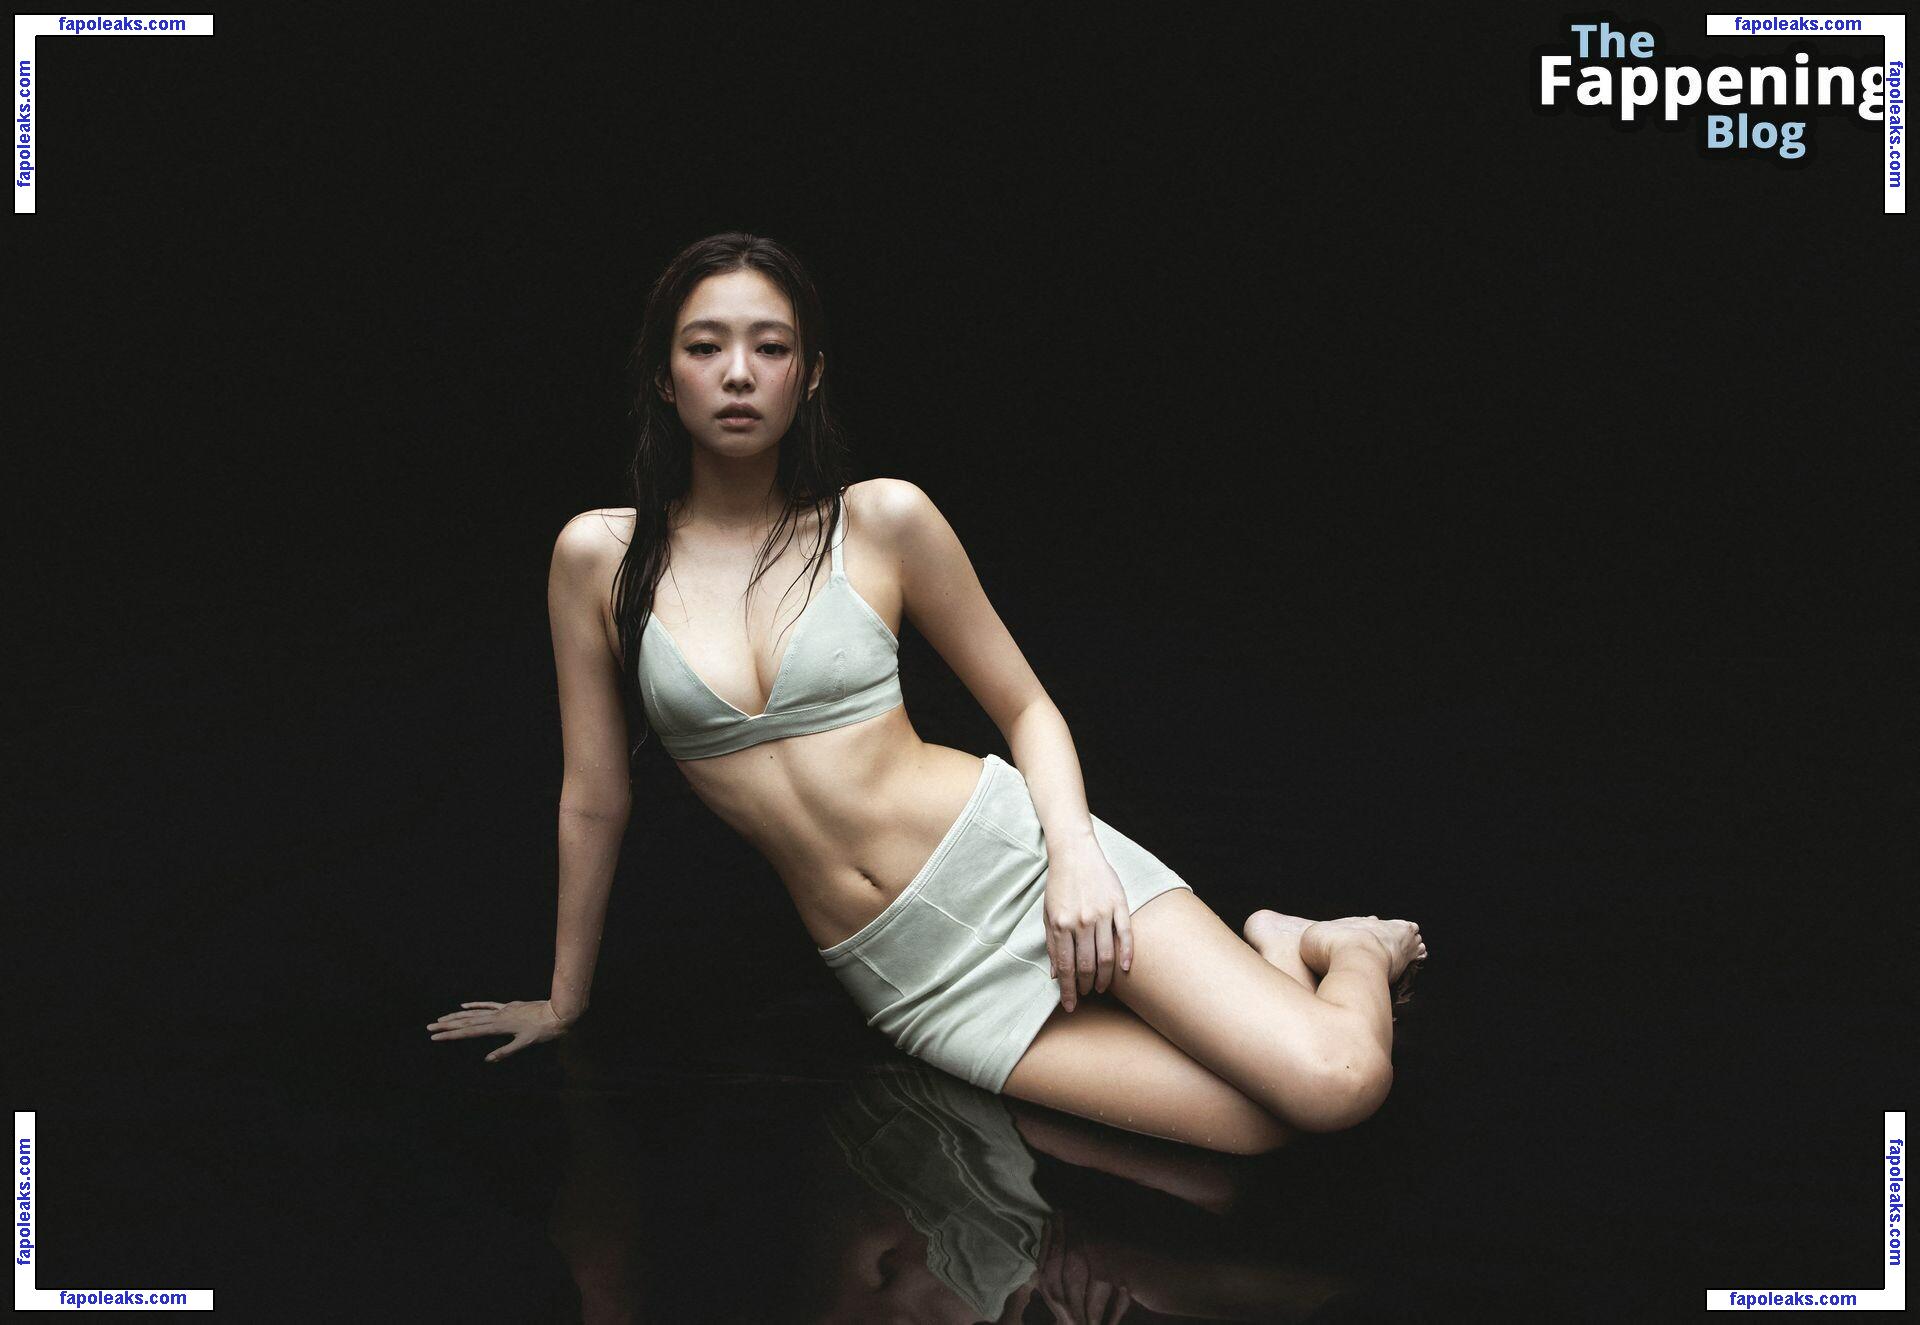 Jennie Kim / jennierubyjane nude photo #0005 from OnlyFans